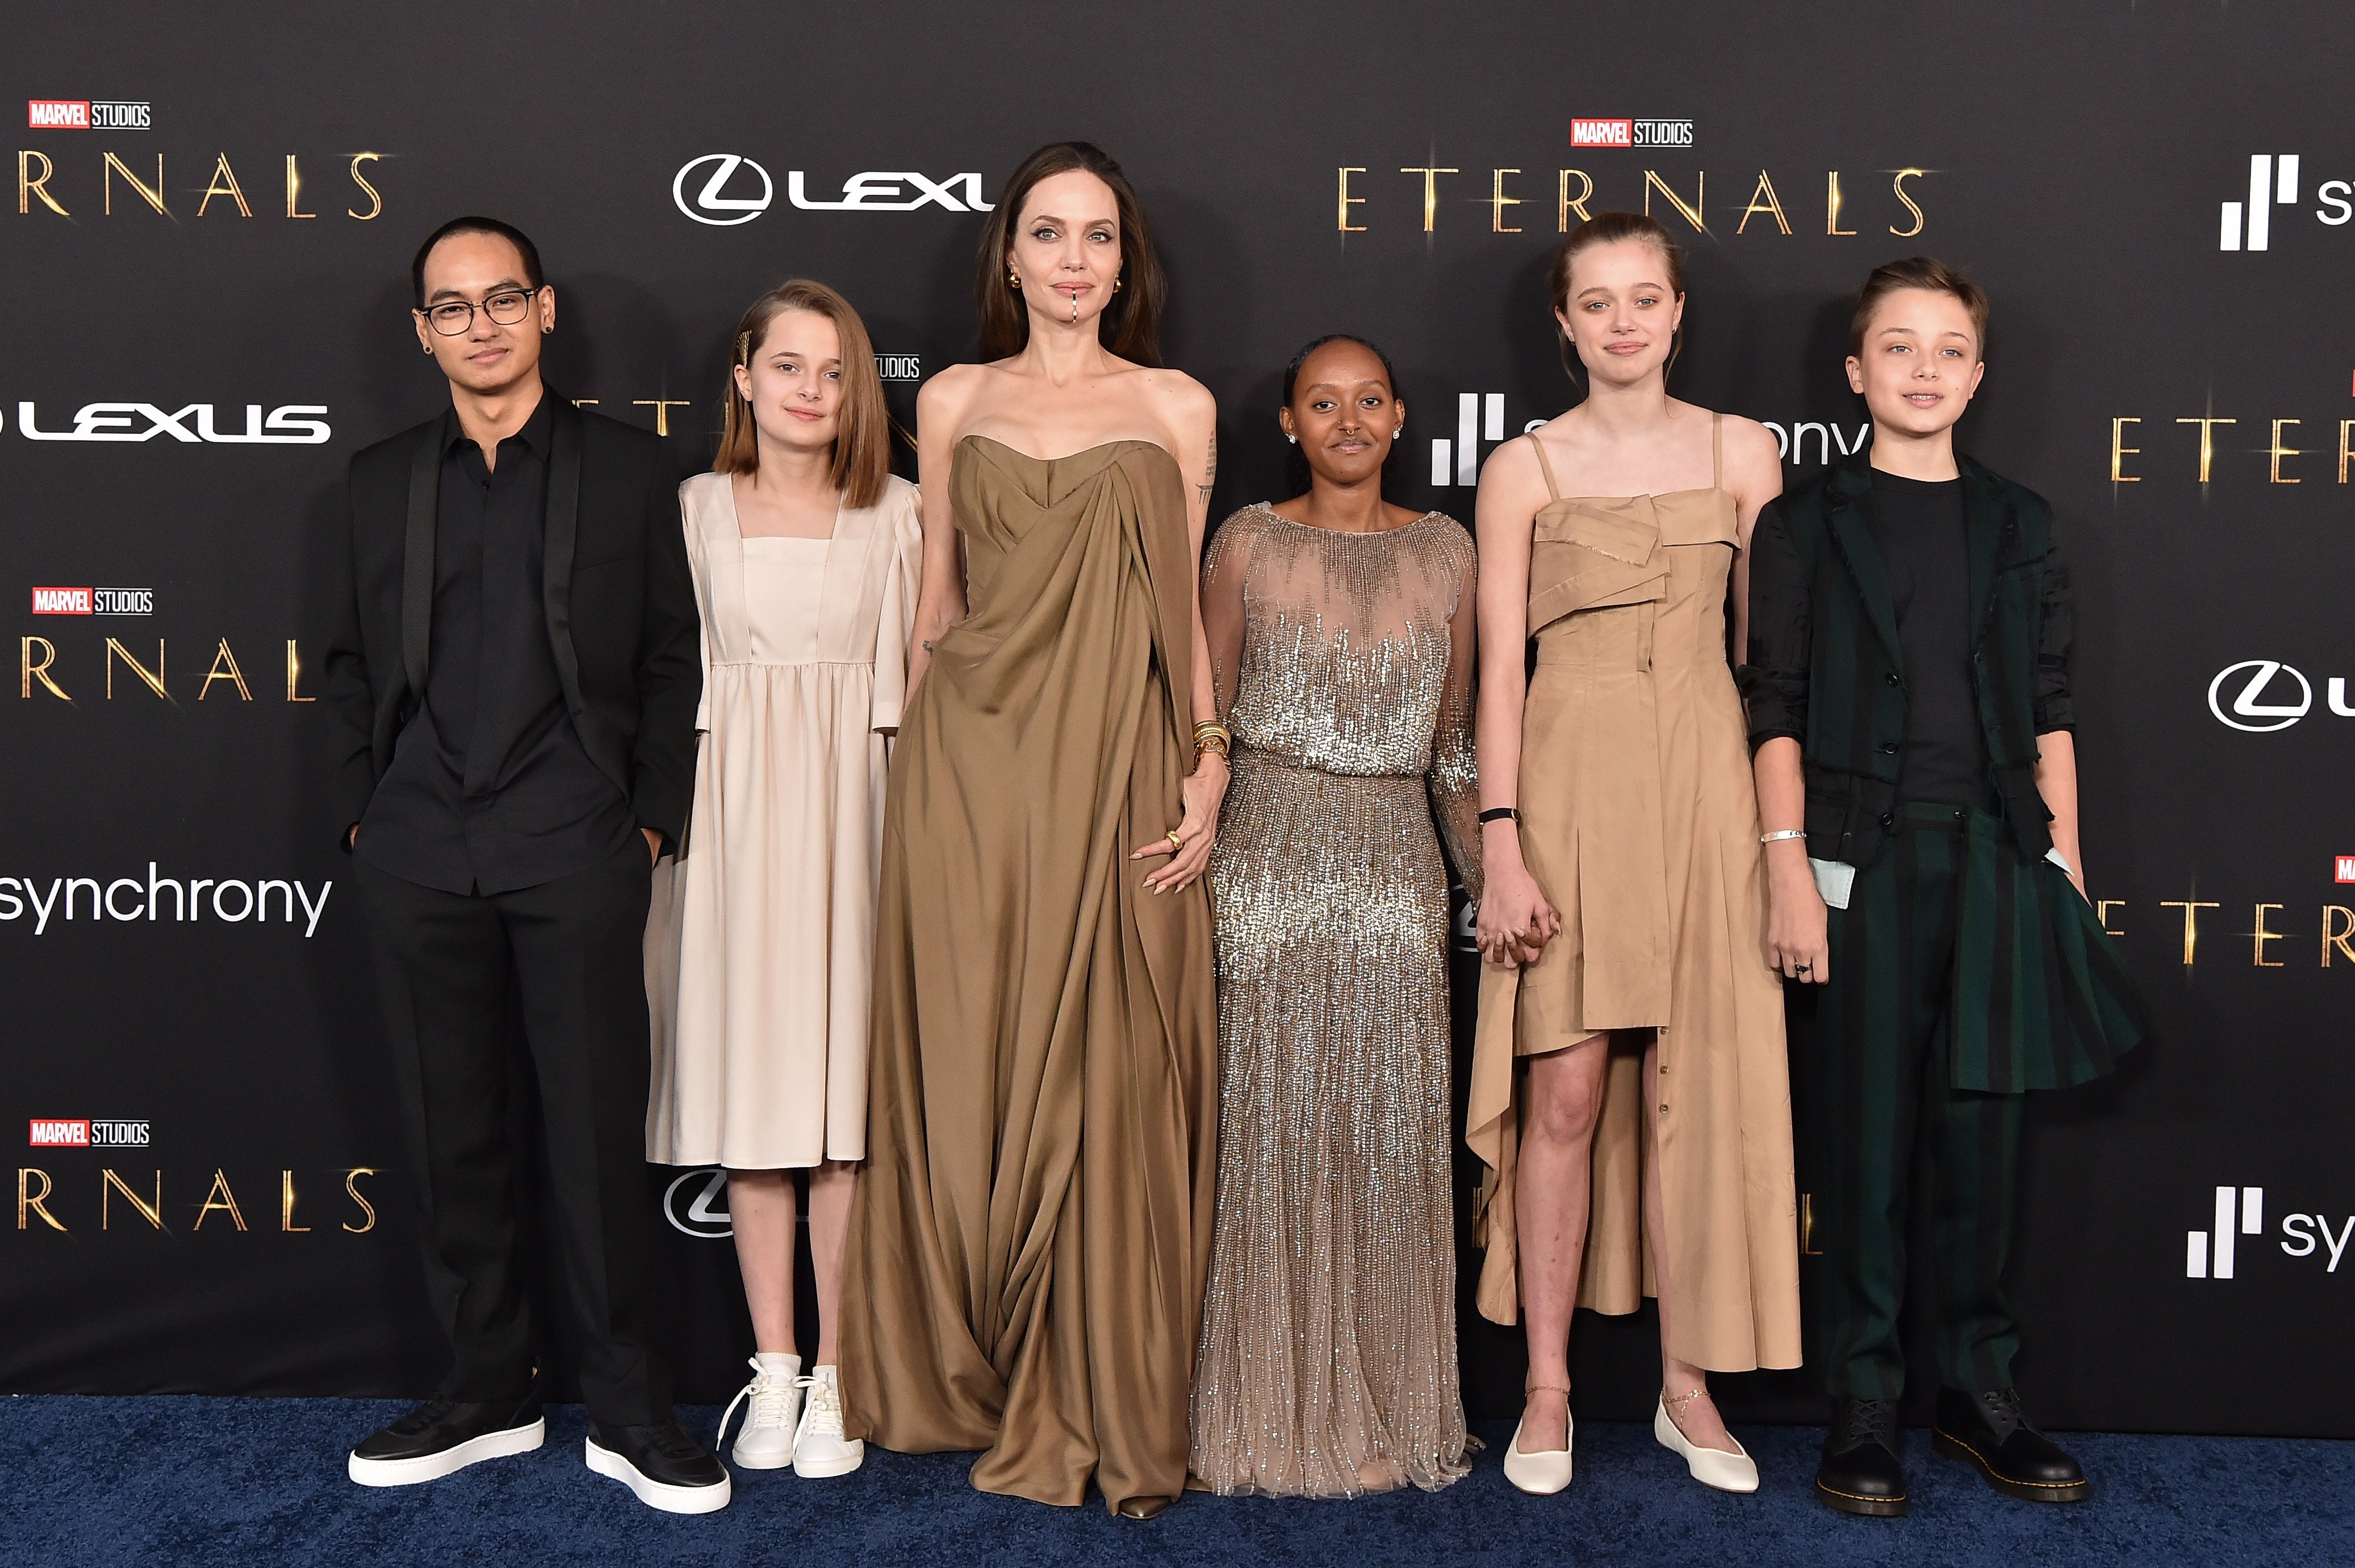 Maddox et Vivienne Jolie-Pitt, Angelina Jolie, Knox, Shiloh et Zahara Jolie-Pitt à la première de "Eternals" à Los Angeles, le 18 octobre 2021, en Californie | Source : Getty Images